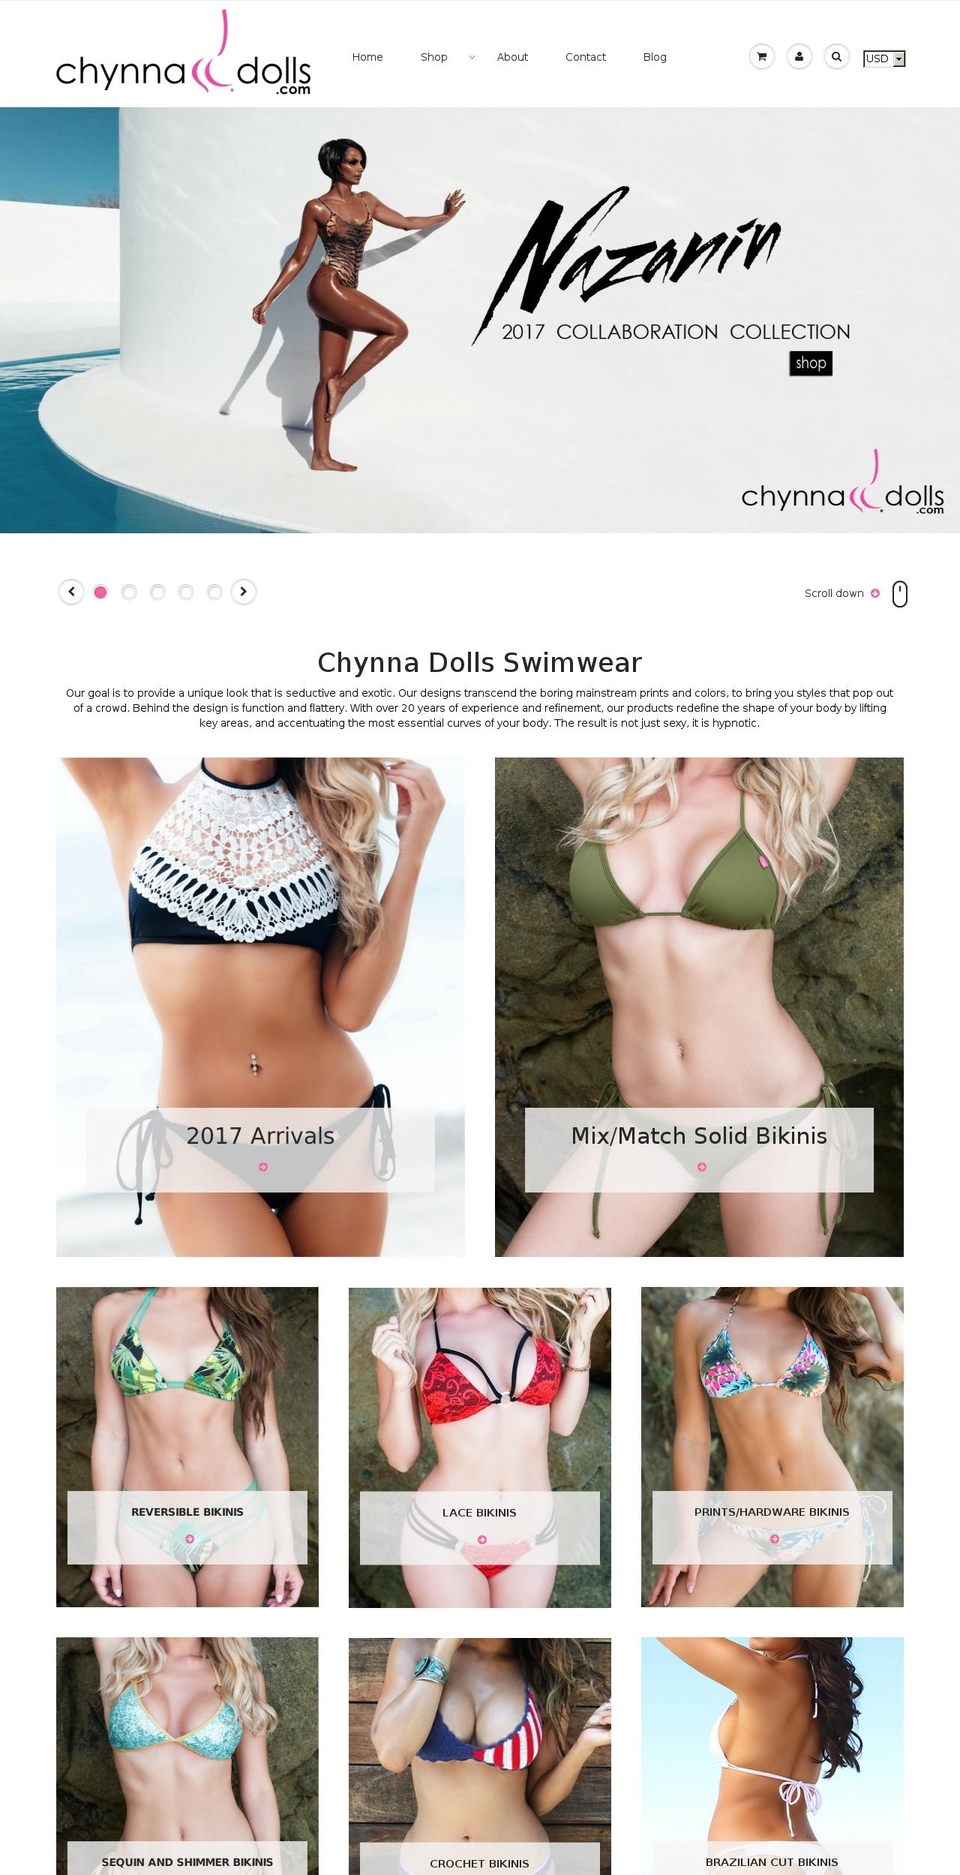 Fashionopolism Shopify theme site example chynnadolls.com